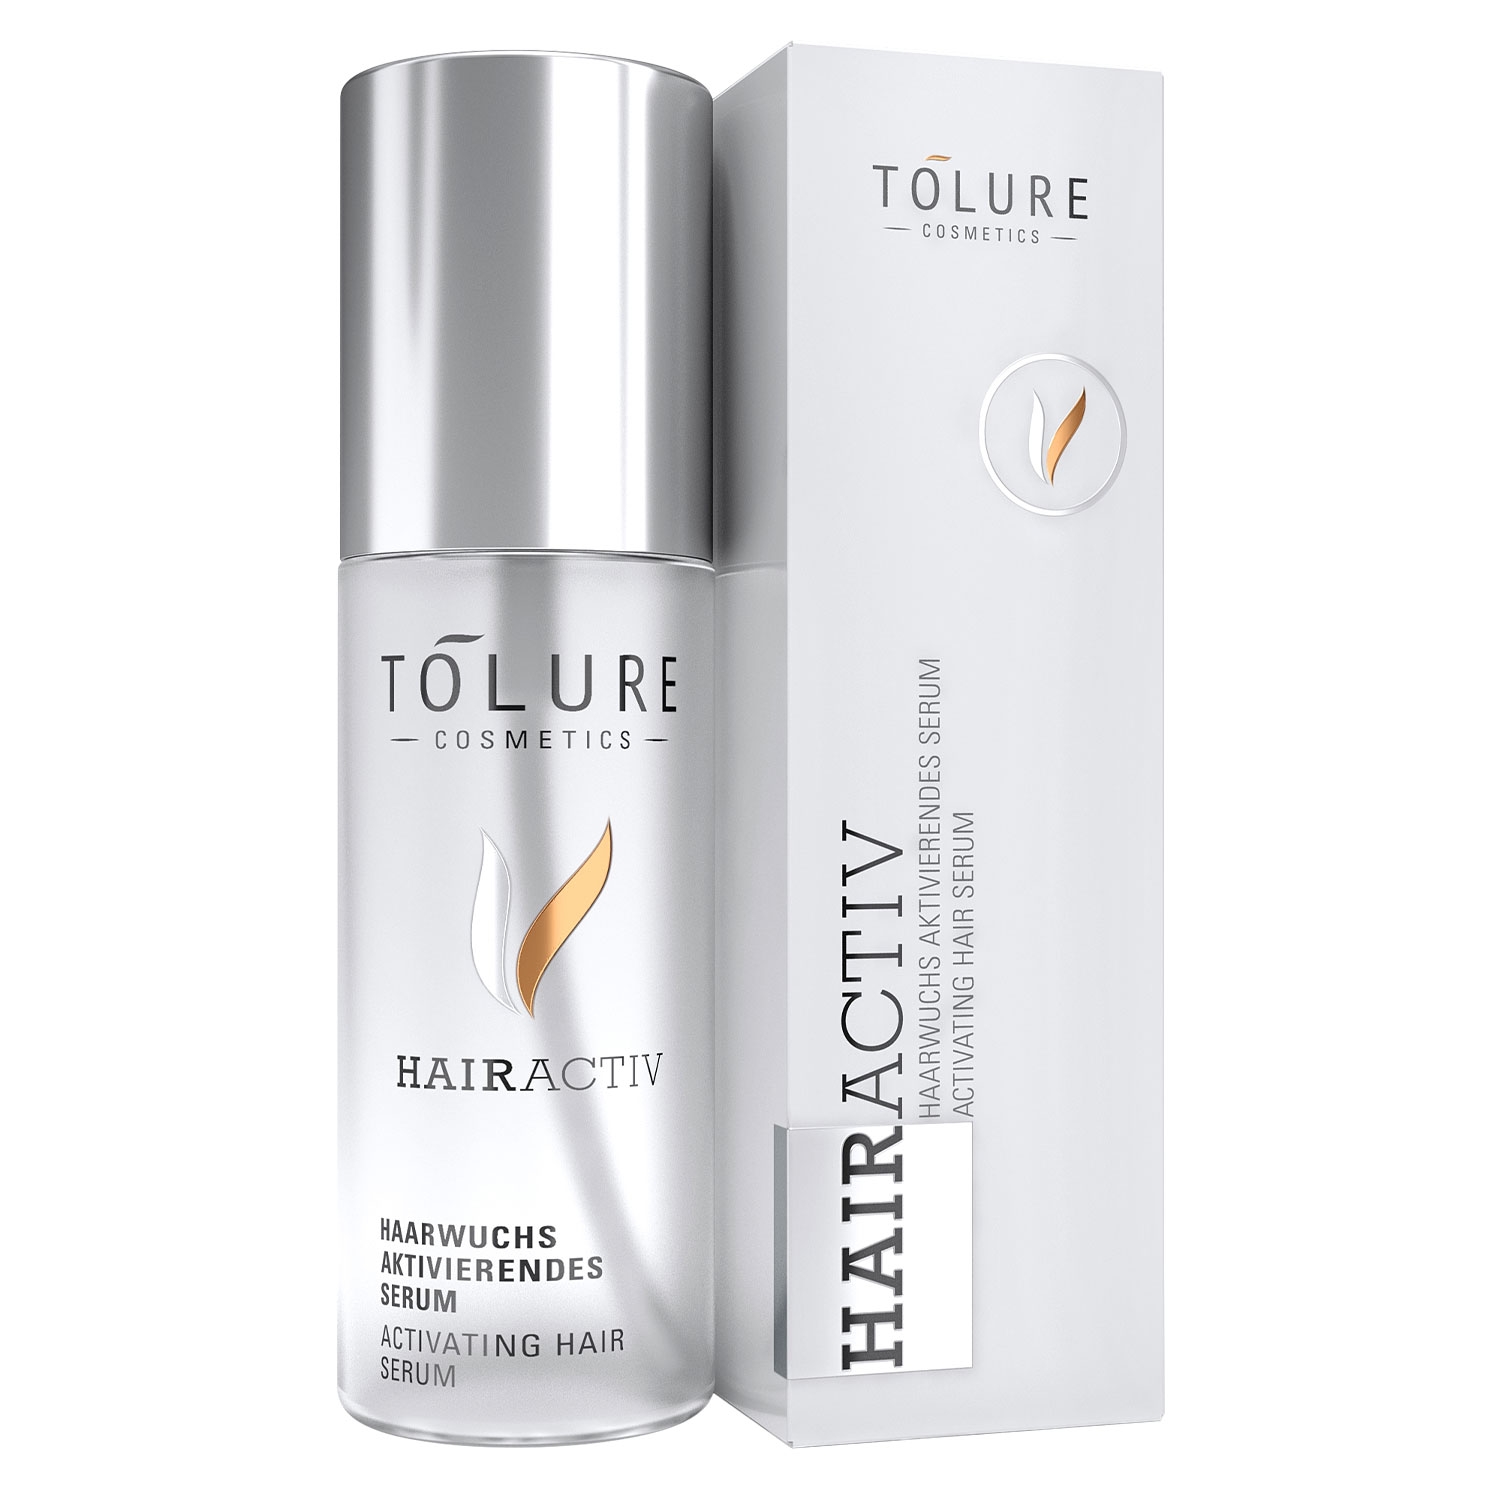 Produktbild von Tolure - HAIRACTIV Activating Hair Serum